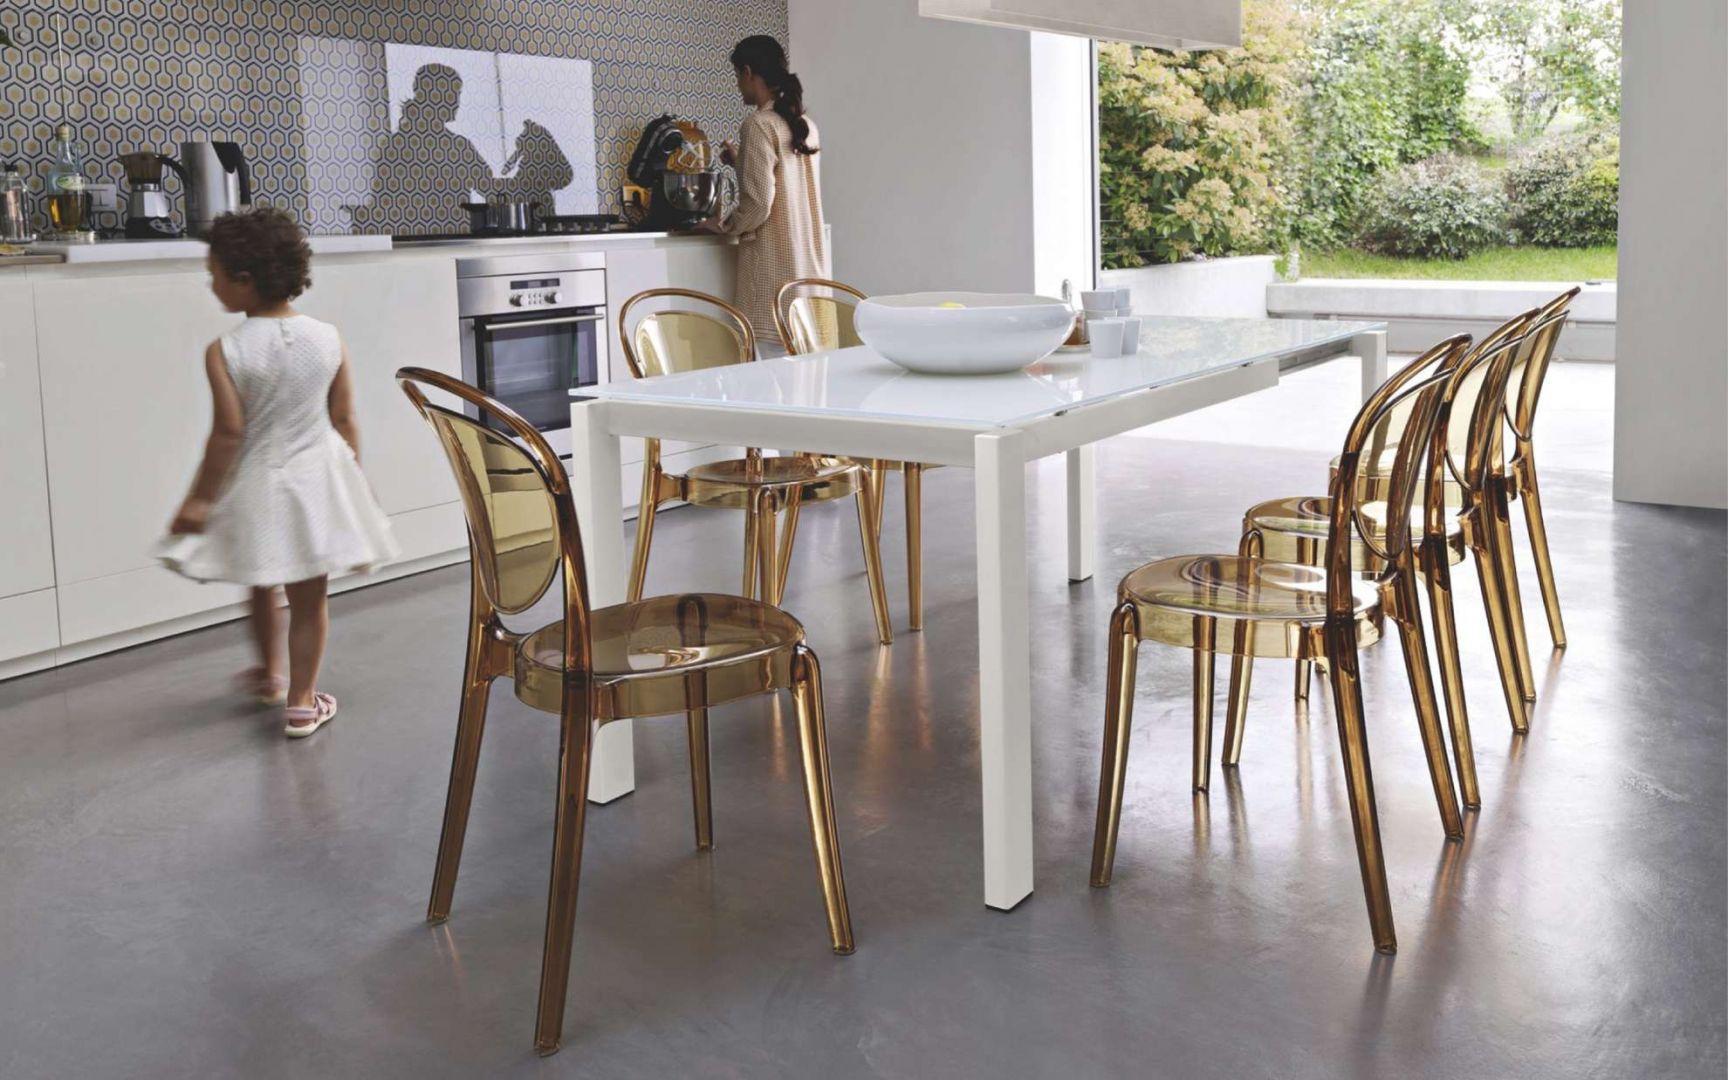 Biały stół o nowoczesnej formie doskonale komponuje się z krzesłami wykonanymi z tworzywa sztucznego. Fot. Kler